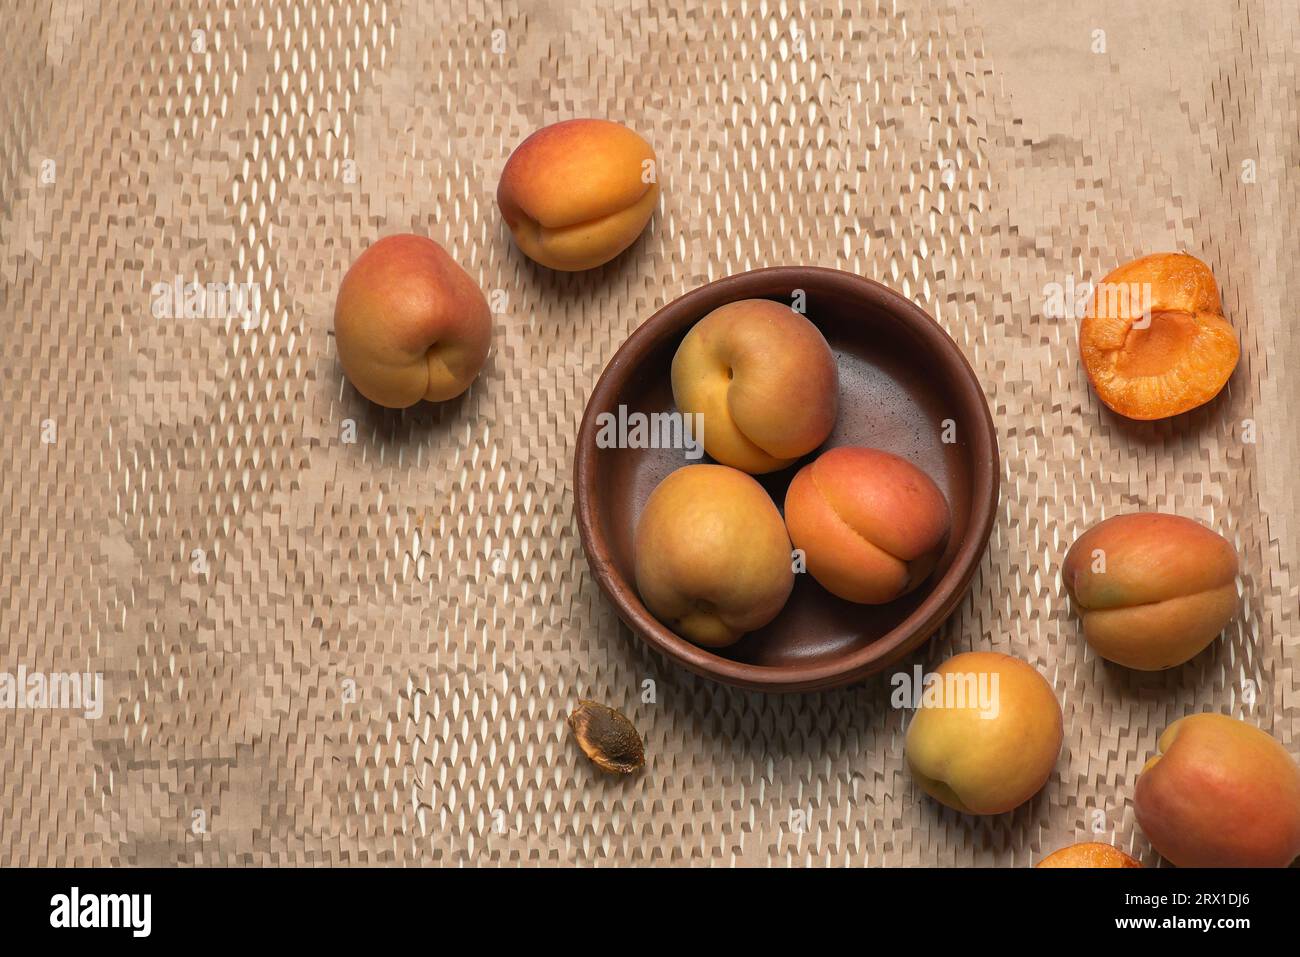 Frische, reife, saftige Aprikosen in einer braunen Schüssel auf hellem Hintergrund. Ganze Früchte, Früchte um die Schüssel, Aprikosenkerne Stockfoto